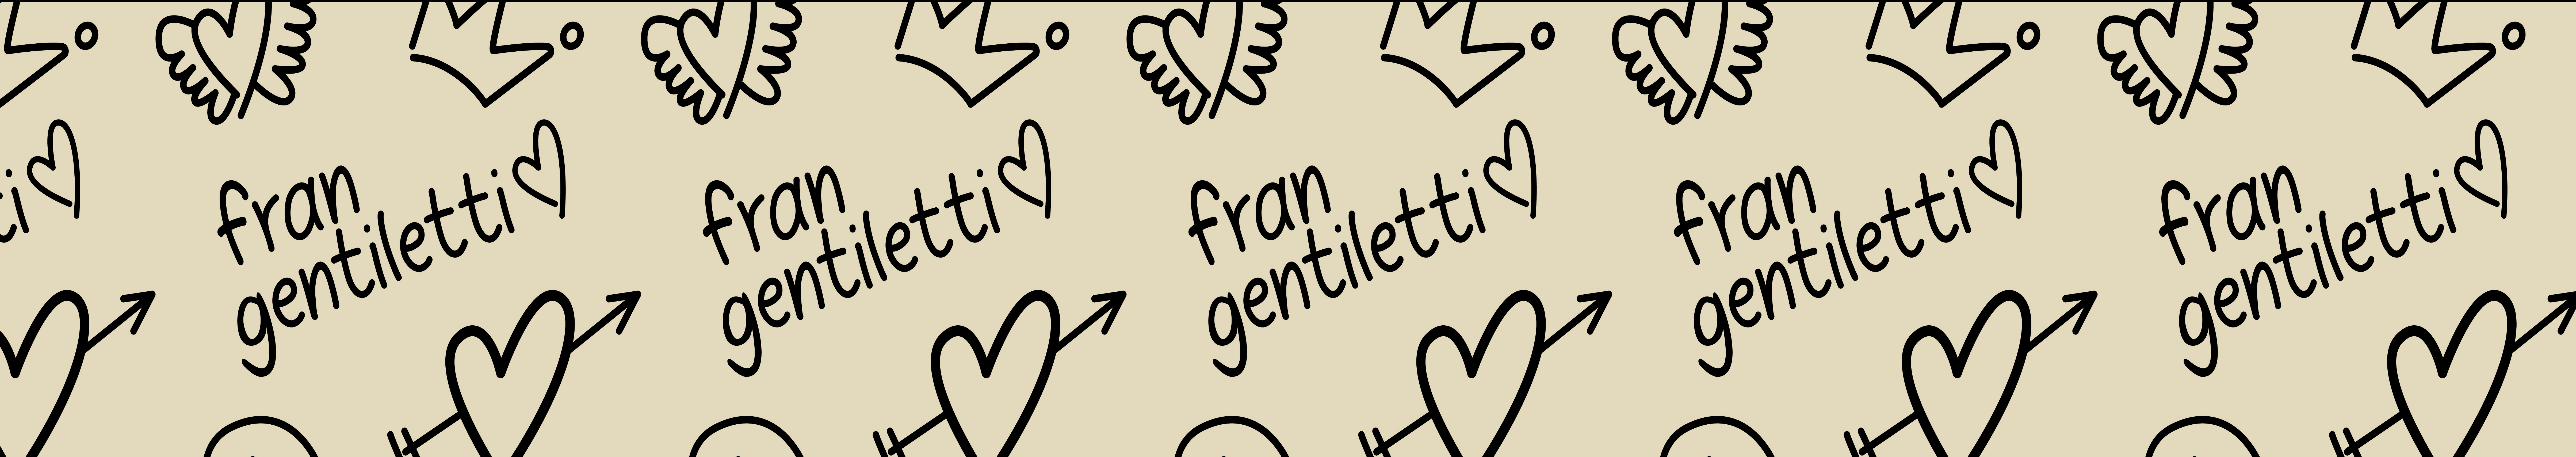 Francesca Gentiletti's profile banner